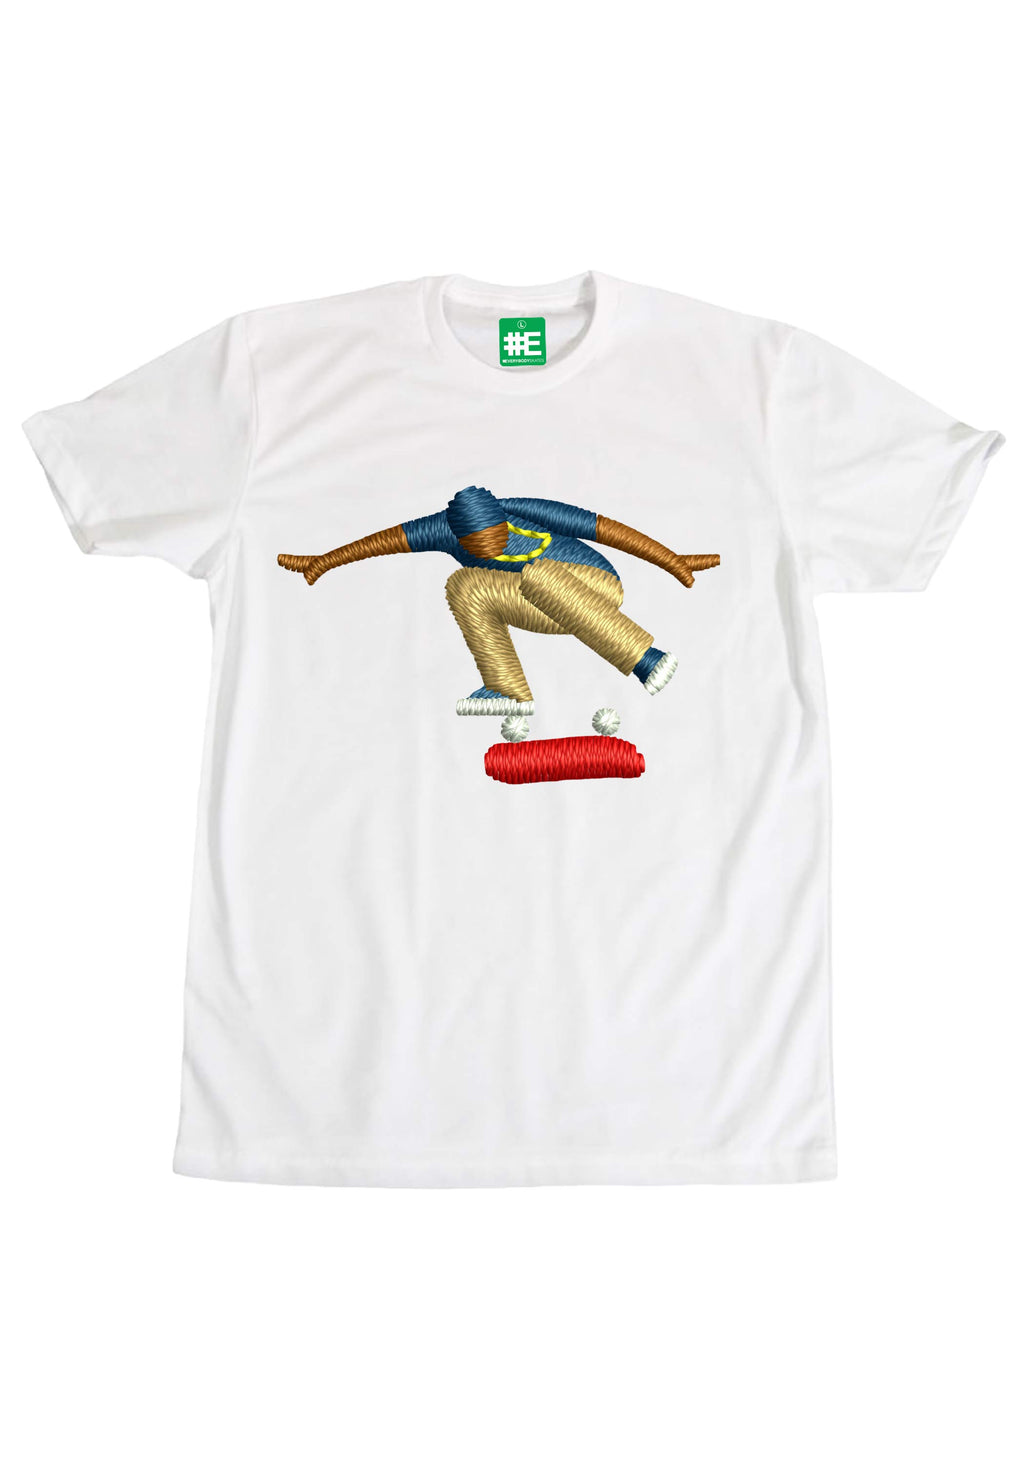 Kickflip Graphic T-shirt